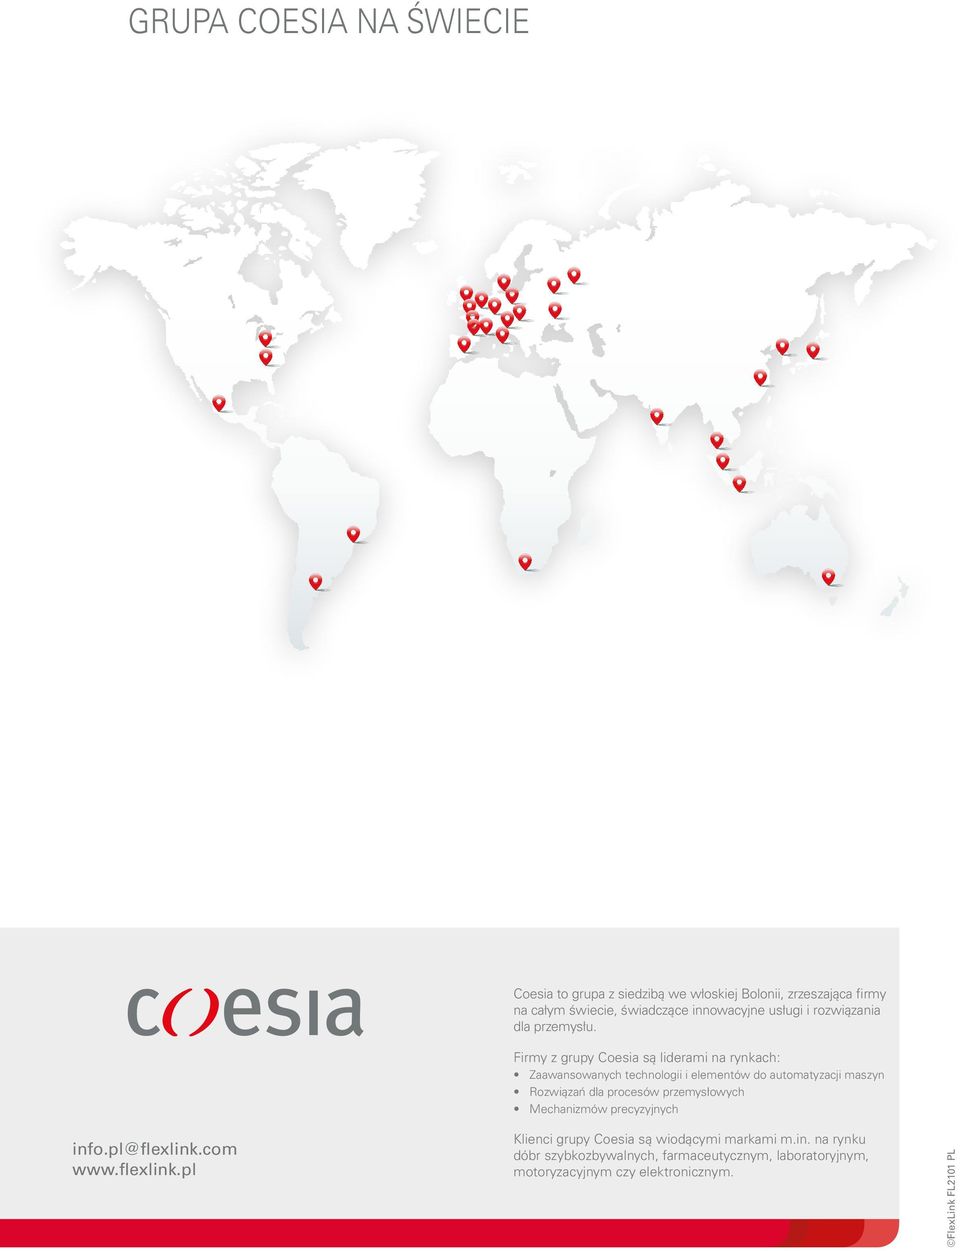 Firmy z grupy Coesia są liderami na rynkach: Zaawansowanych technologii i elementów do automatyzacji maszyn Rozwiązań dla procesów